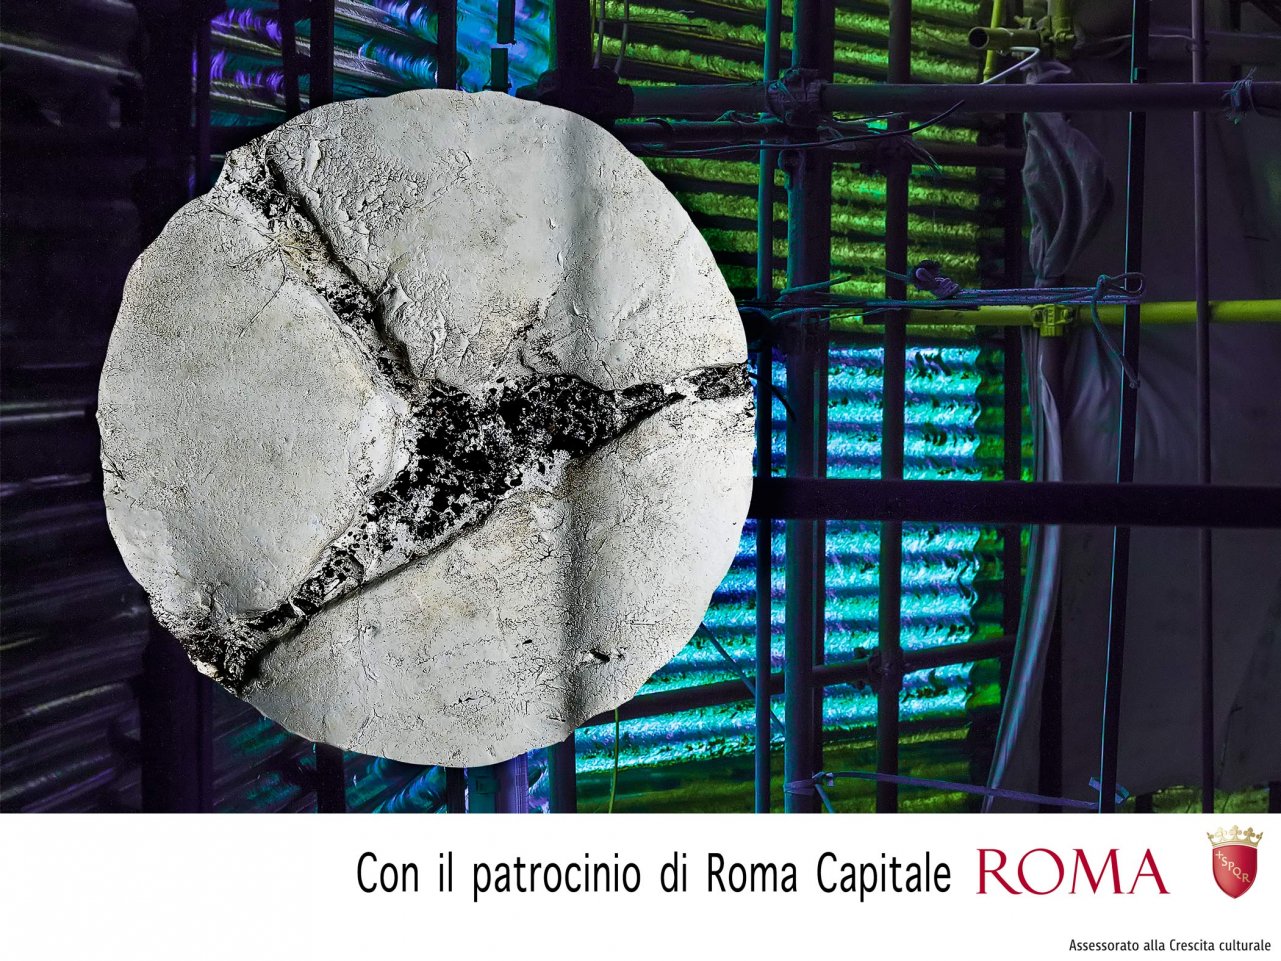 Eugenio Donato, Basolato romano (scultura, dettaglio) - Alessandro Zazza, (fotografia, dettaglio)